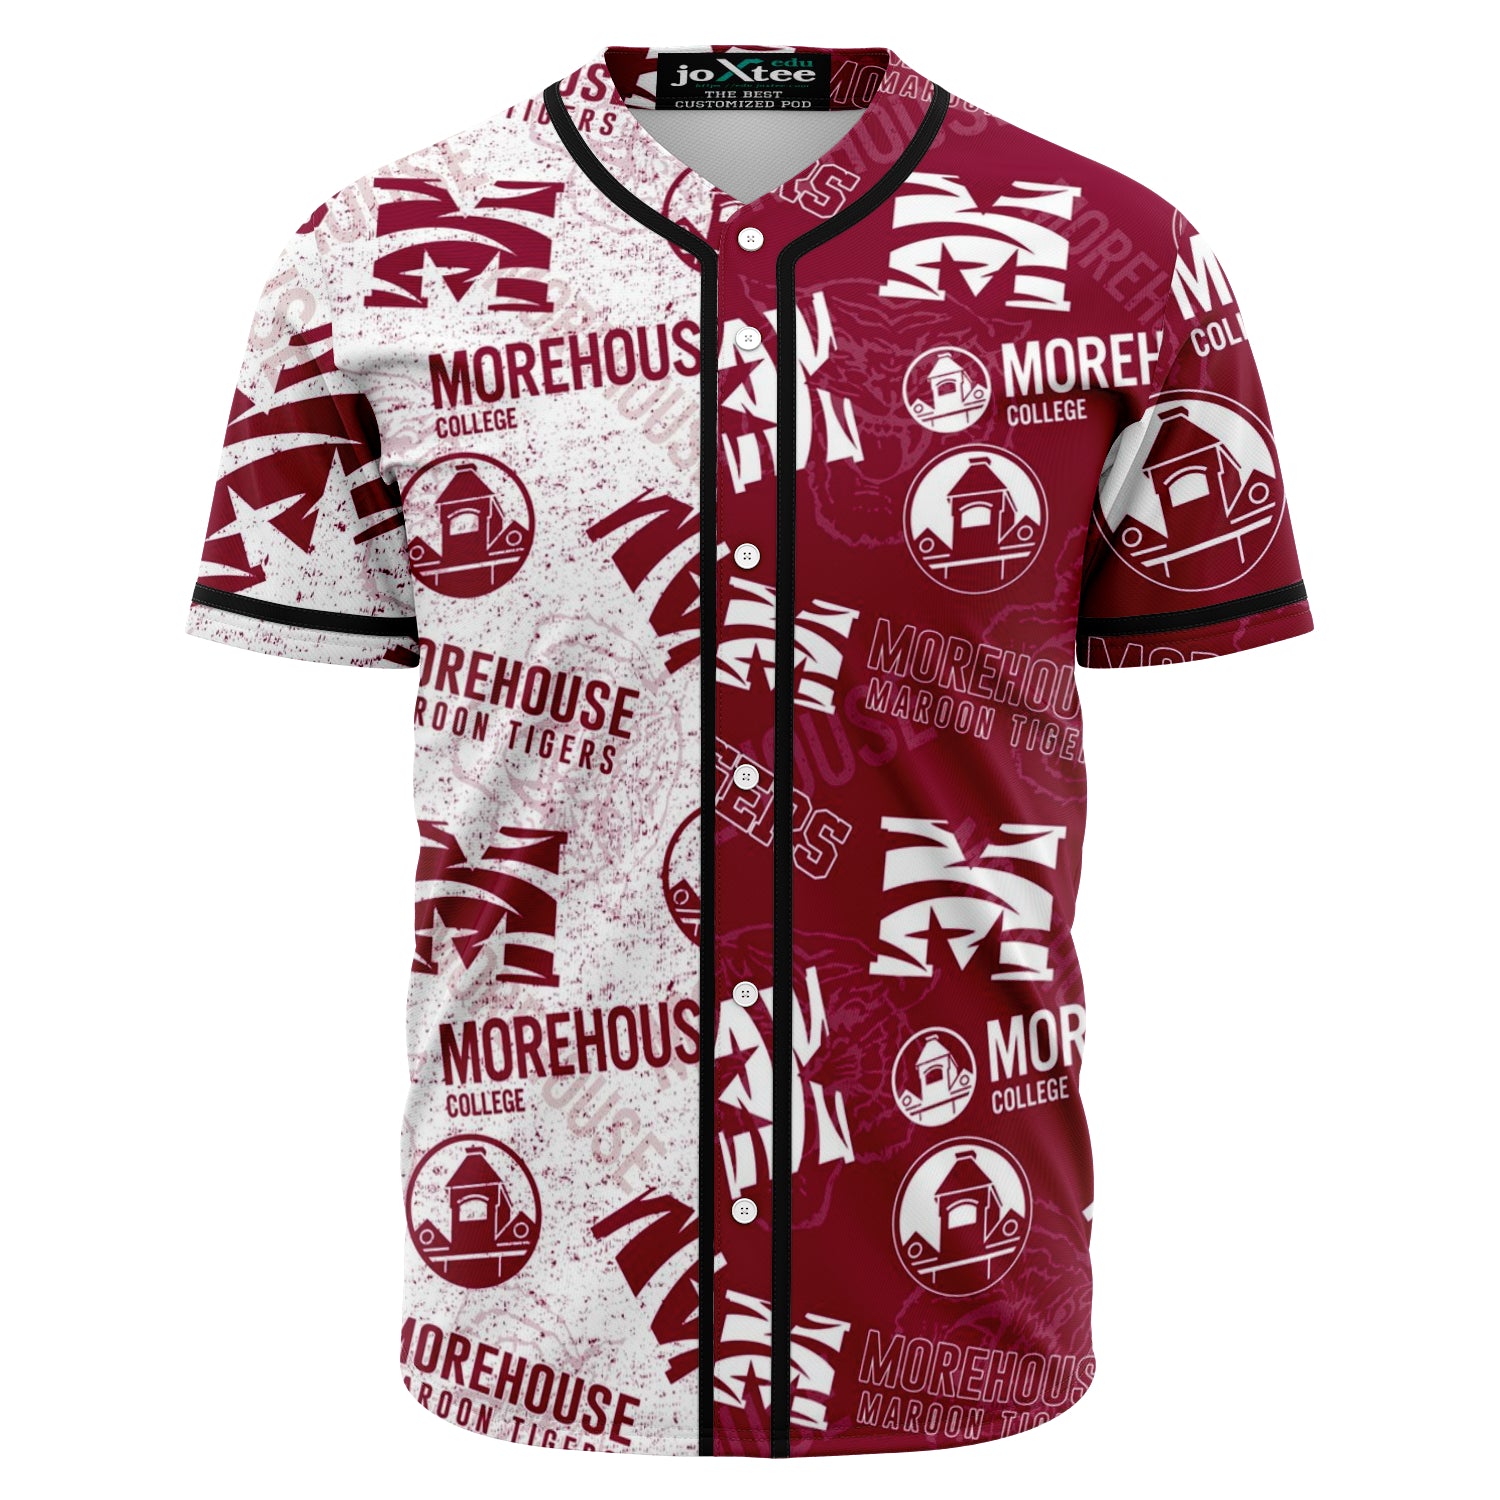 Morehouse baseball jersey v734